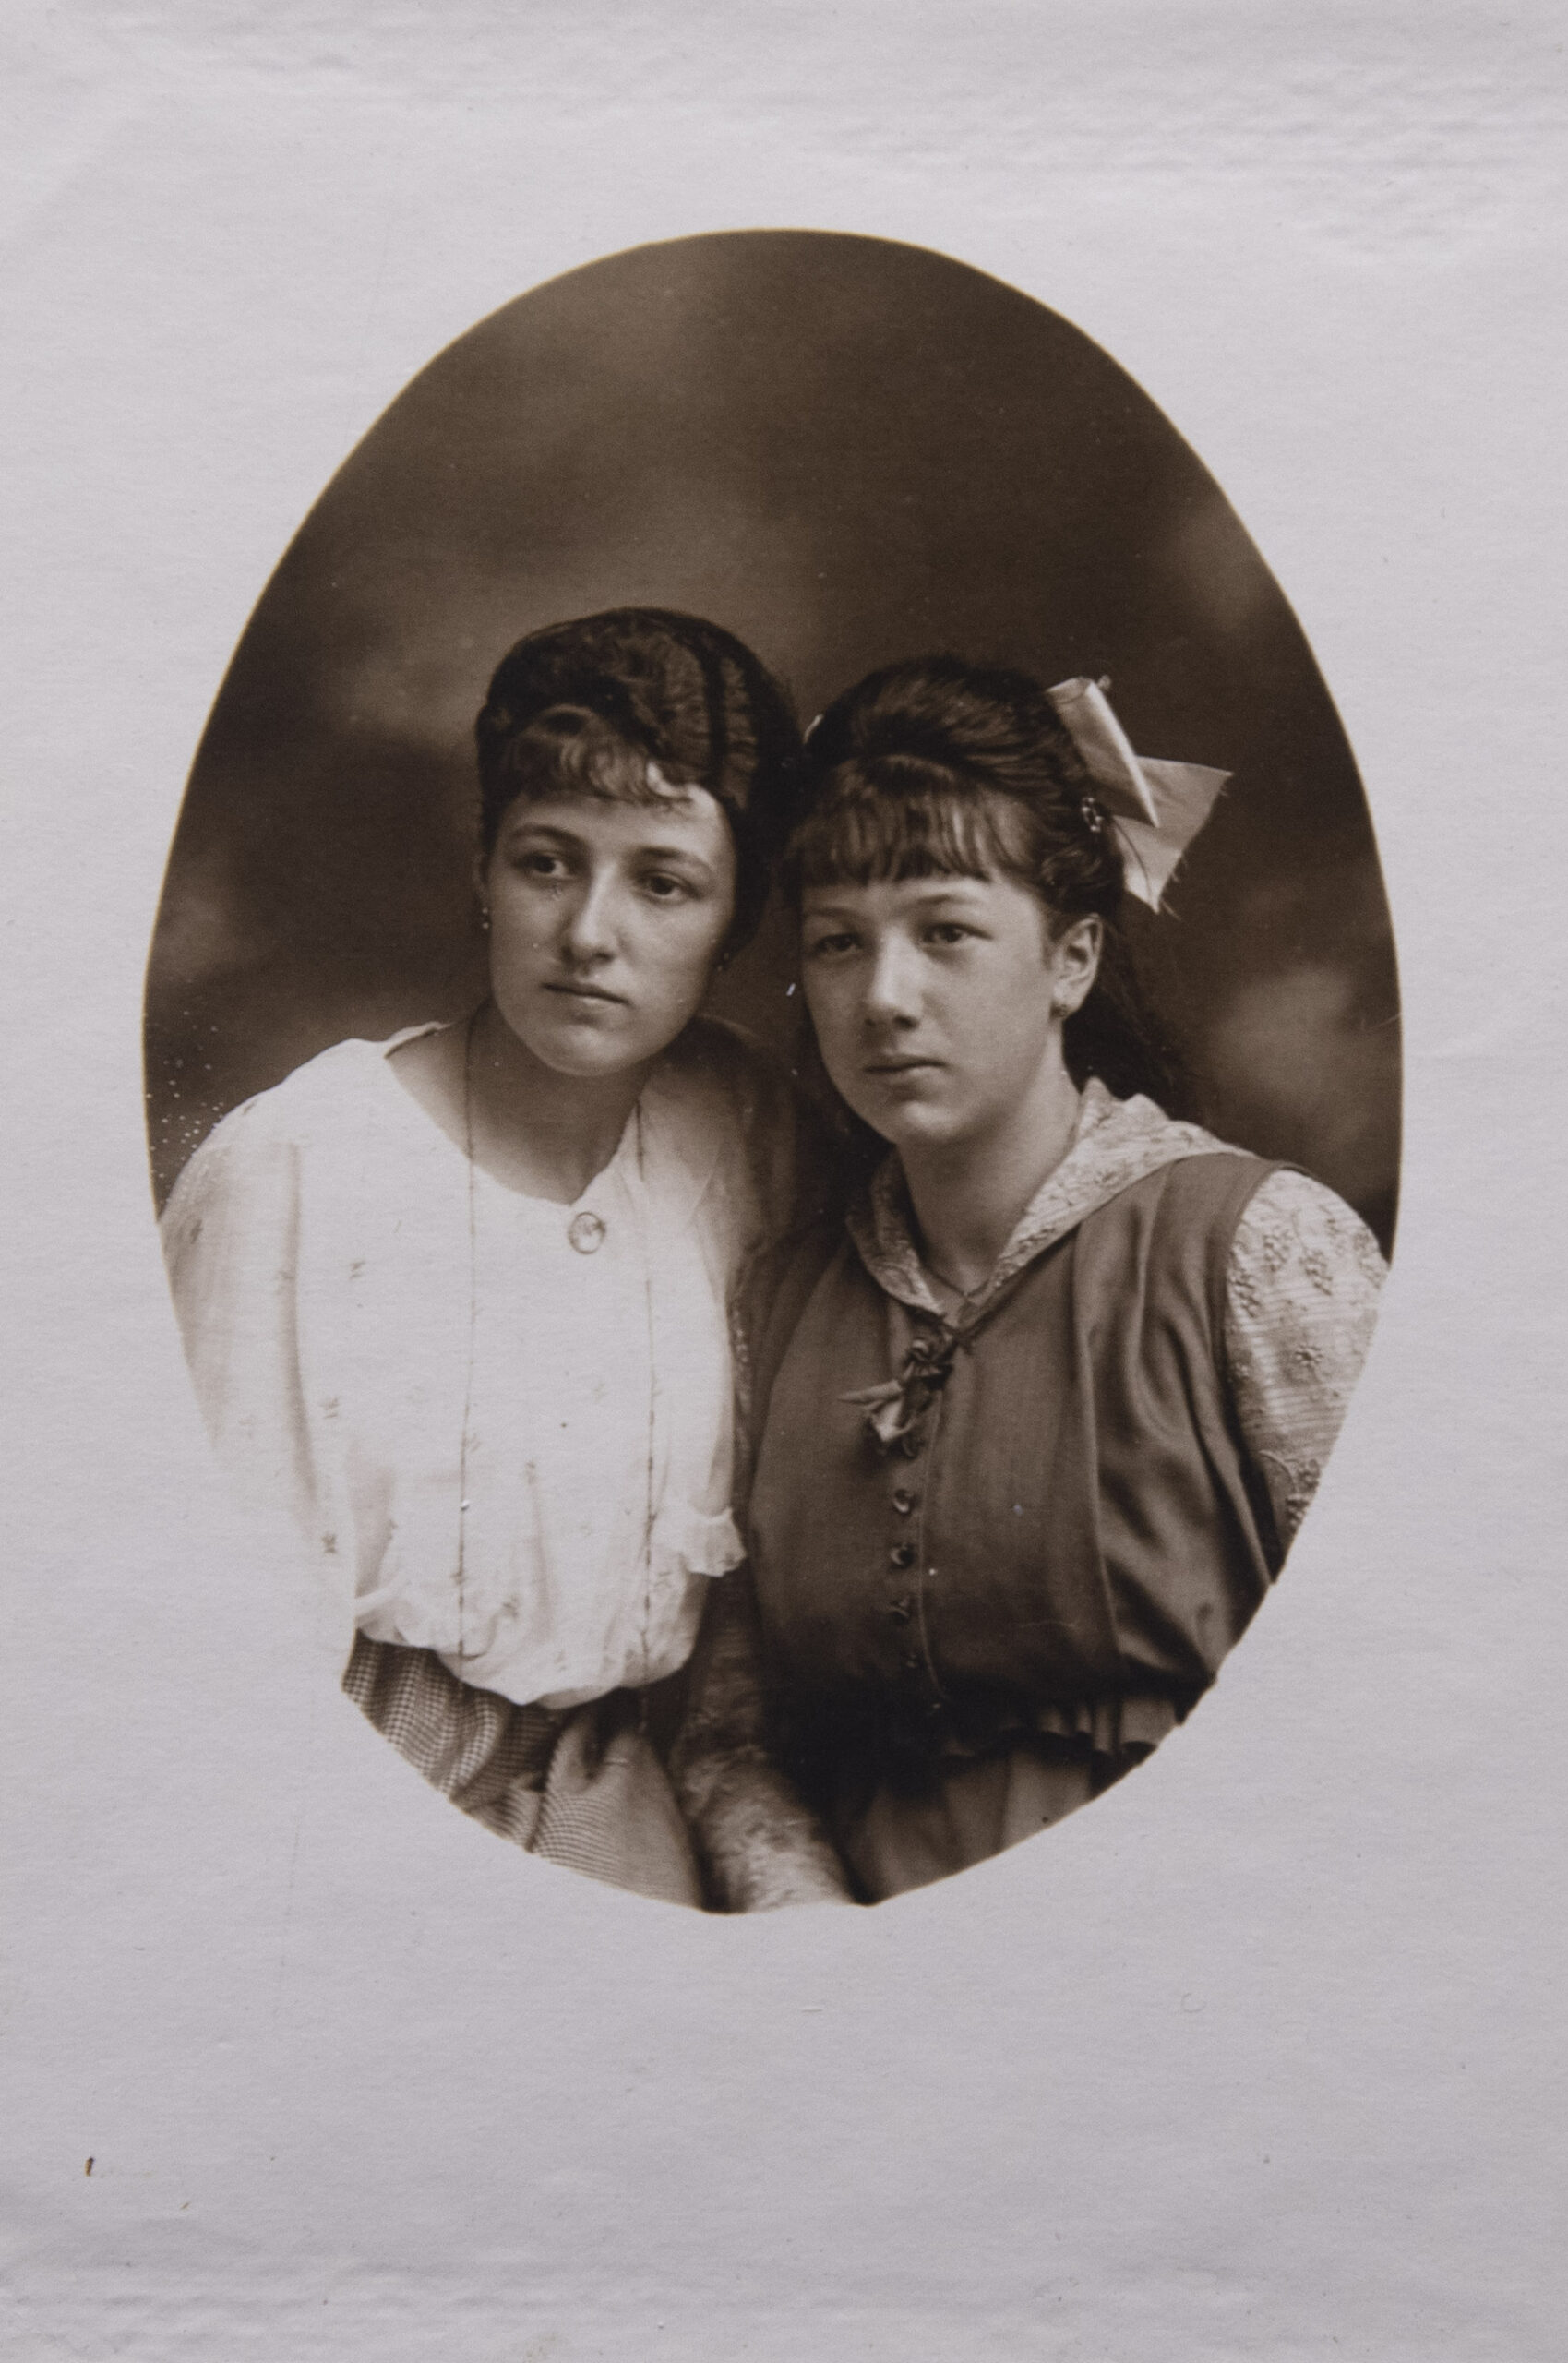 Portrait de deux marraines, présentes sur la photographie suivante (celle de droite est debout avec un nœud noir dans les cheveux et celle de gauche est assise au sol en tailleur, portant une tirelire)